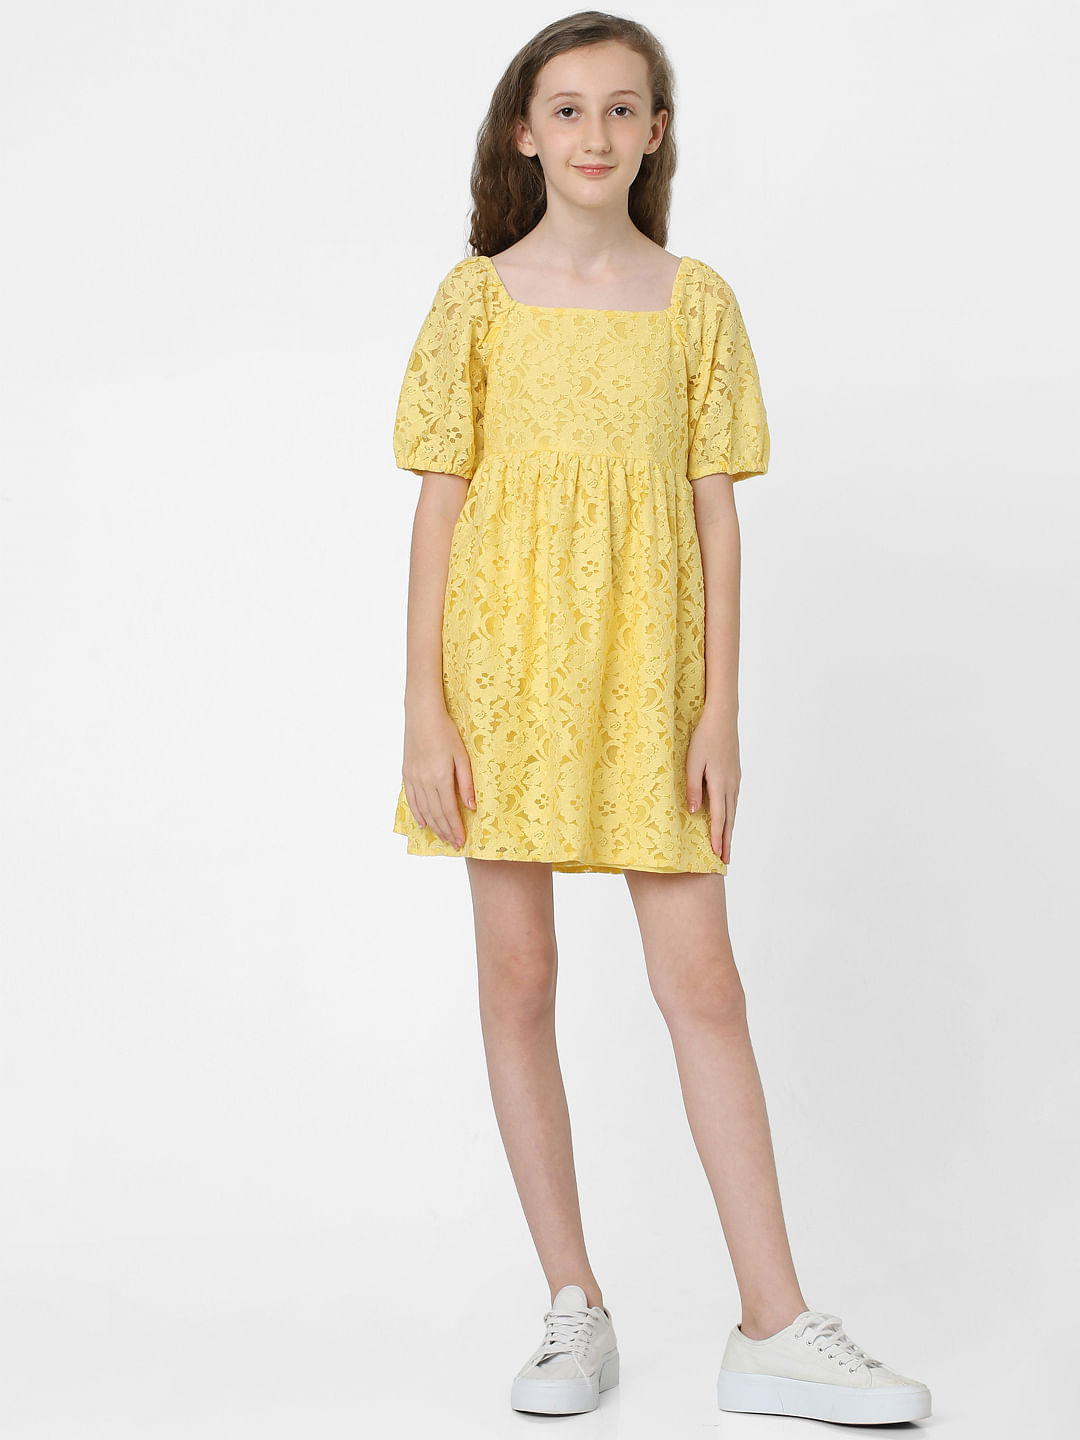 Buy Girls Yellow Print Regular Fit Casual Frock Online - 736396 | Allen  Solly